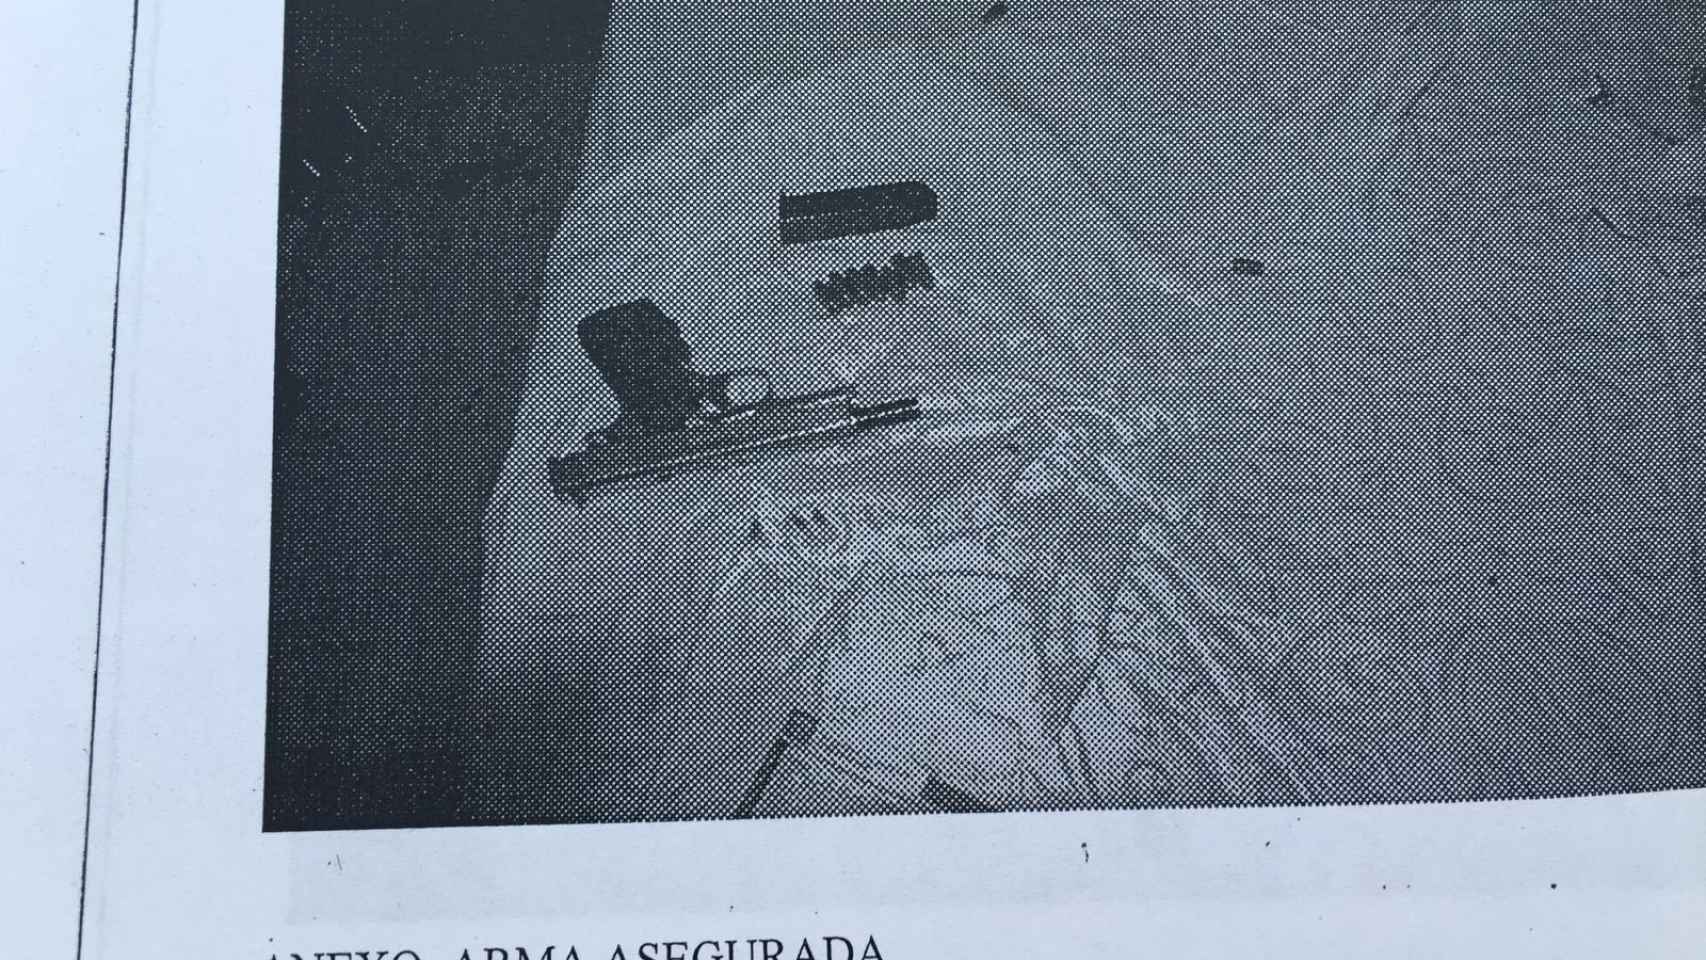 El arma encontrada por la policía forense en la habitación de Juan Miguel Ortega.